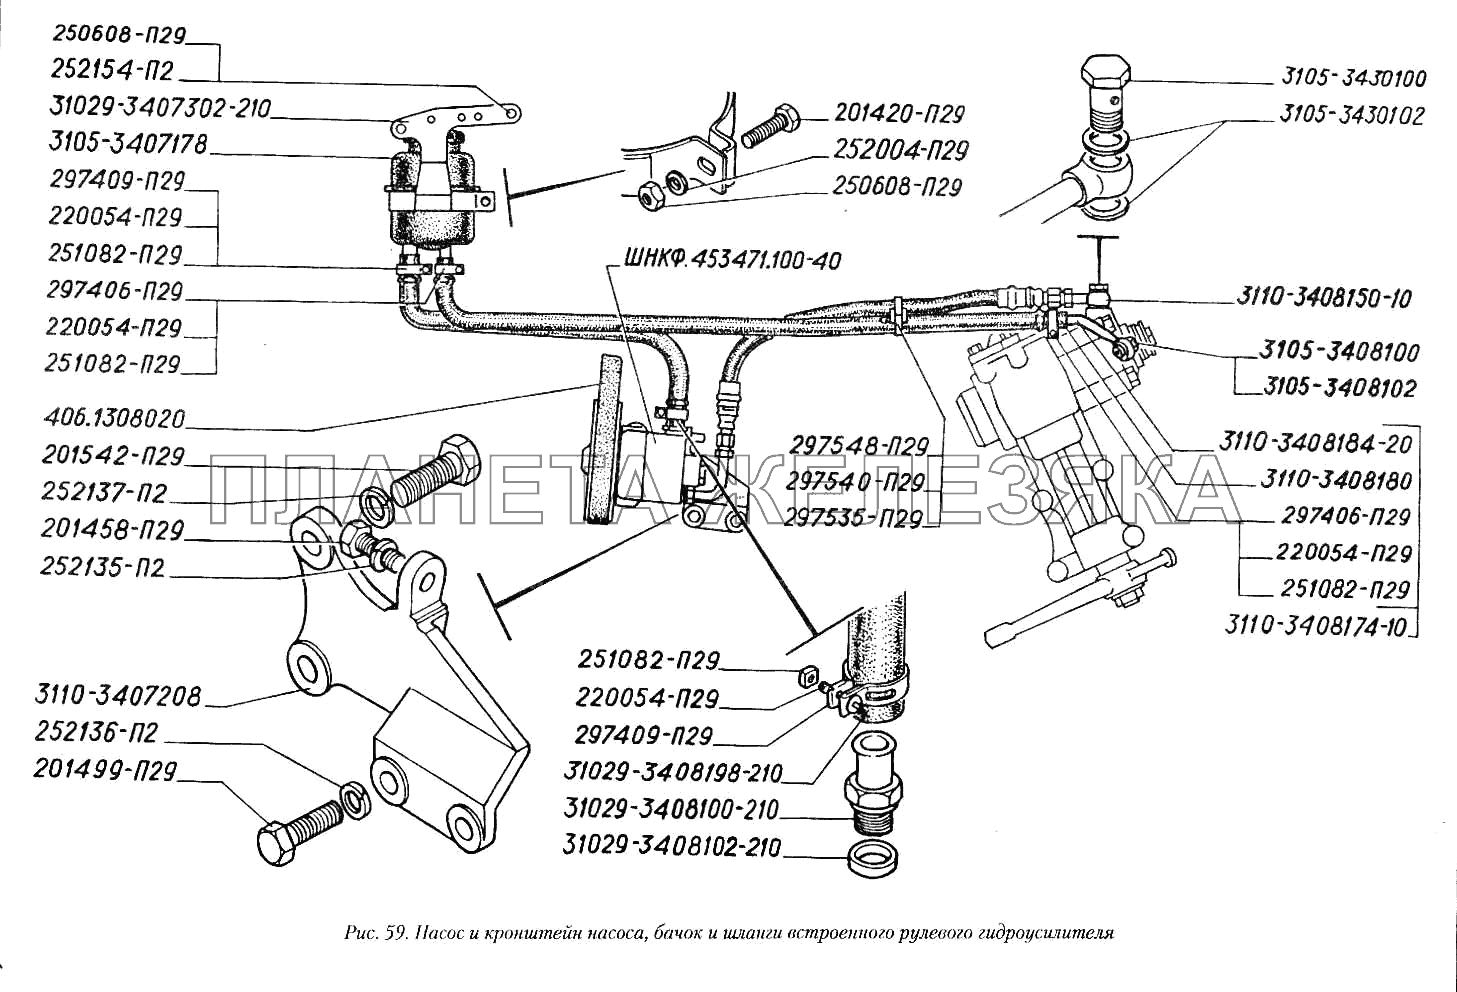 Насос и кронштейн насоса, бачок и шланги встроенного рулевого гидроусилителя ГАЗ-3110